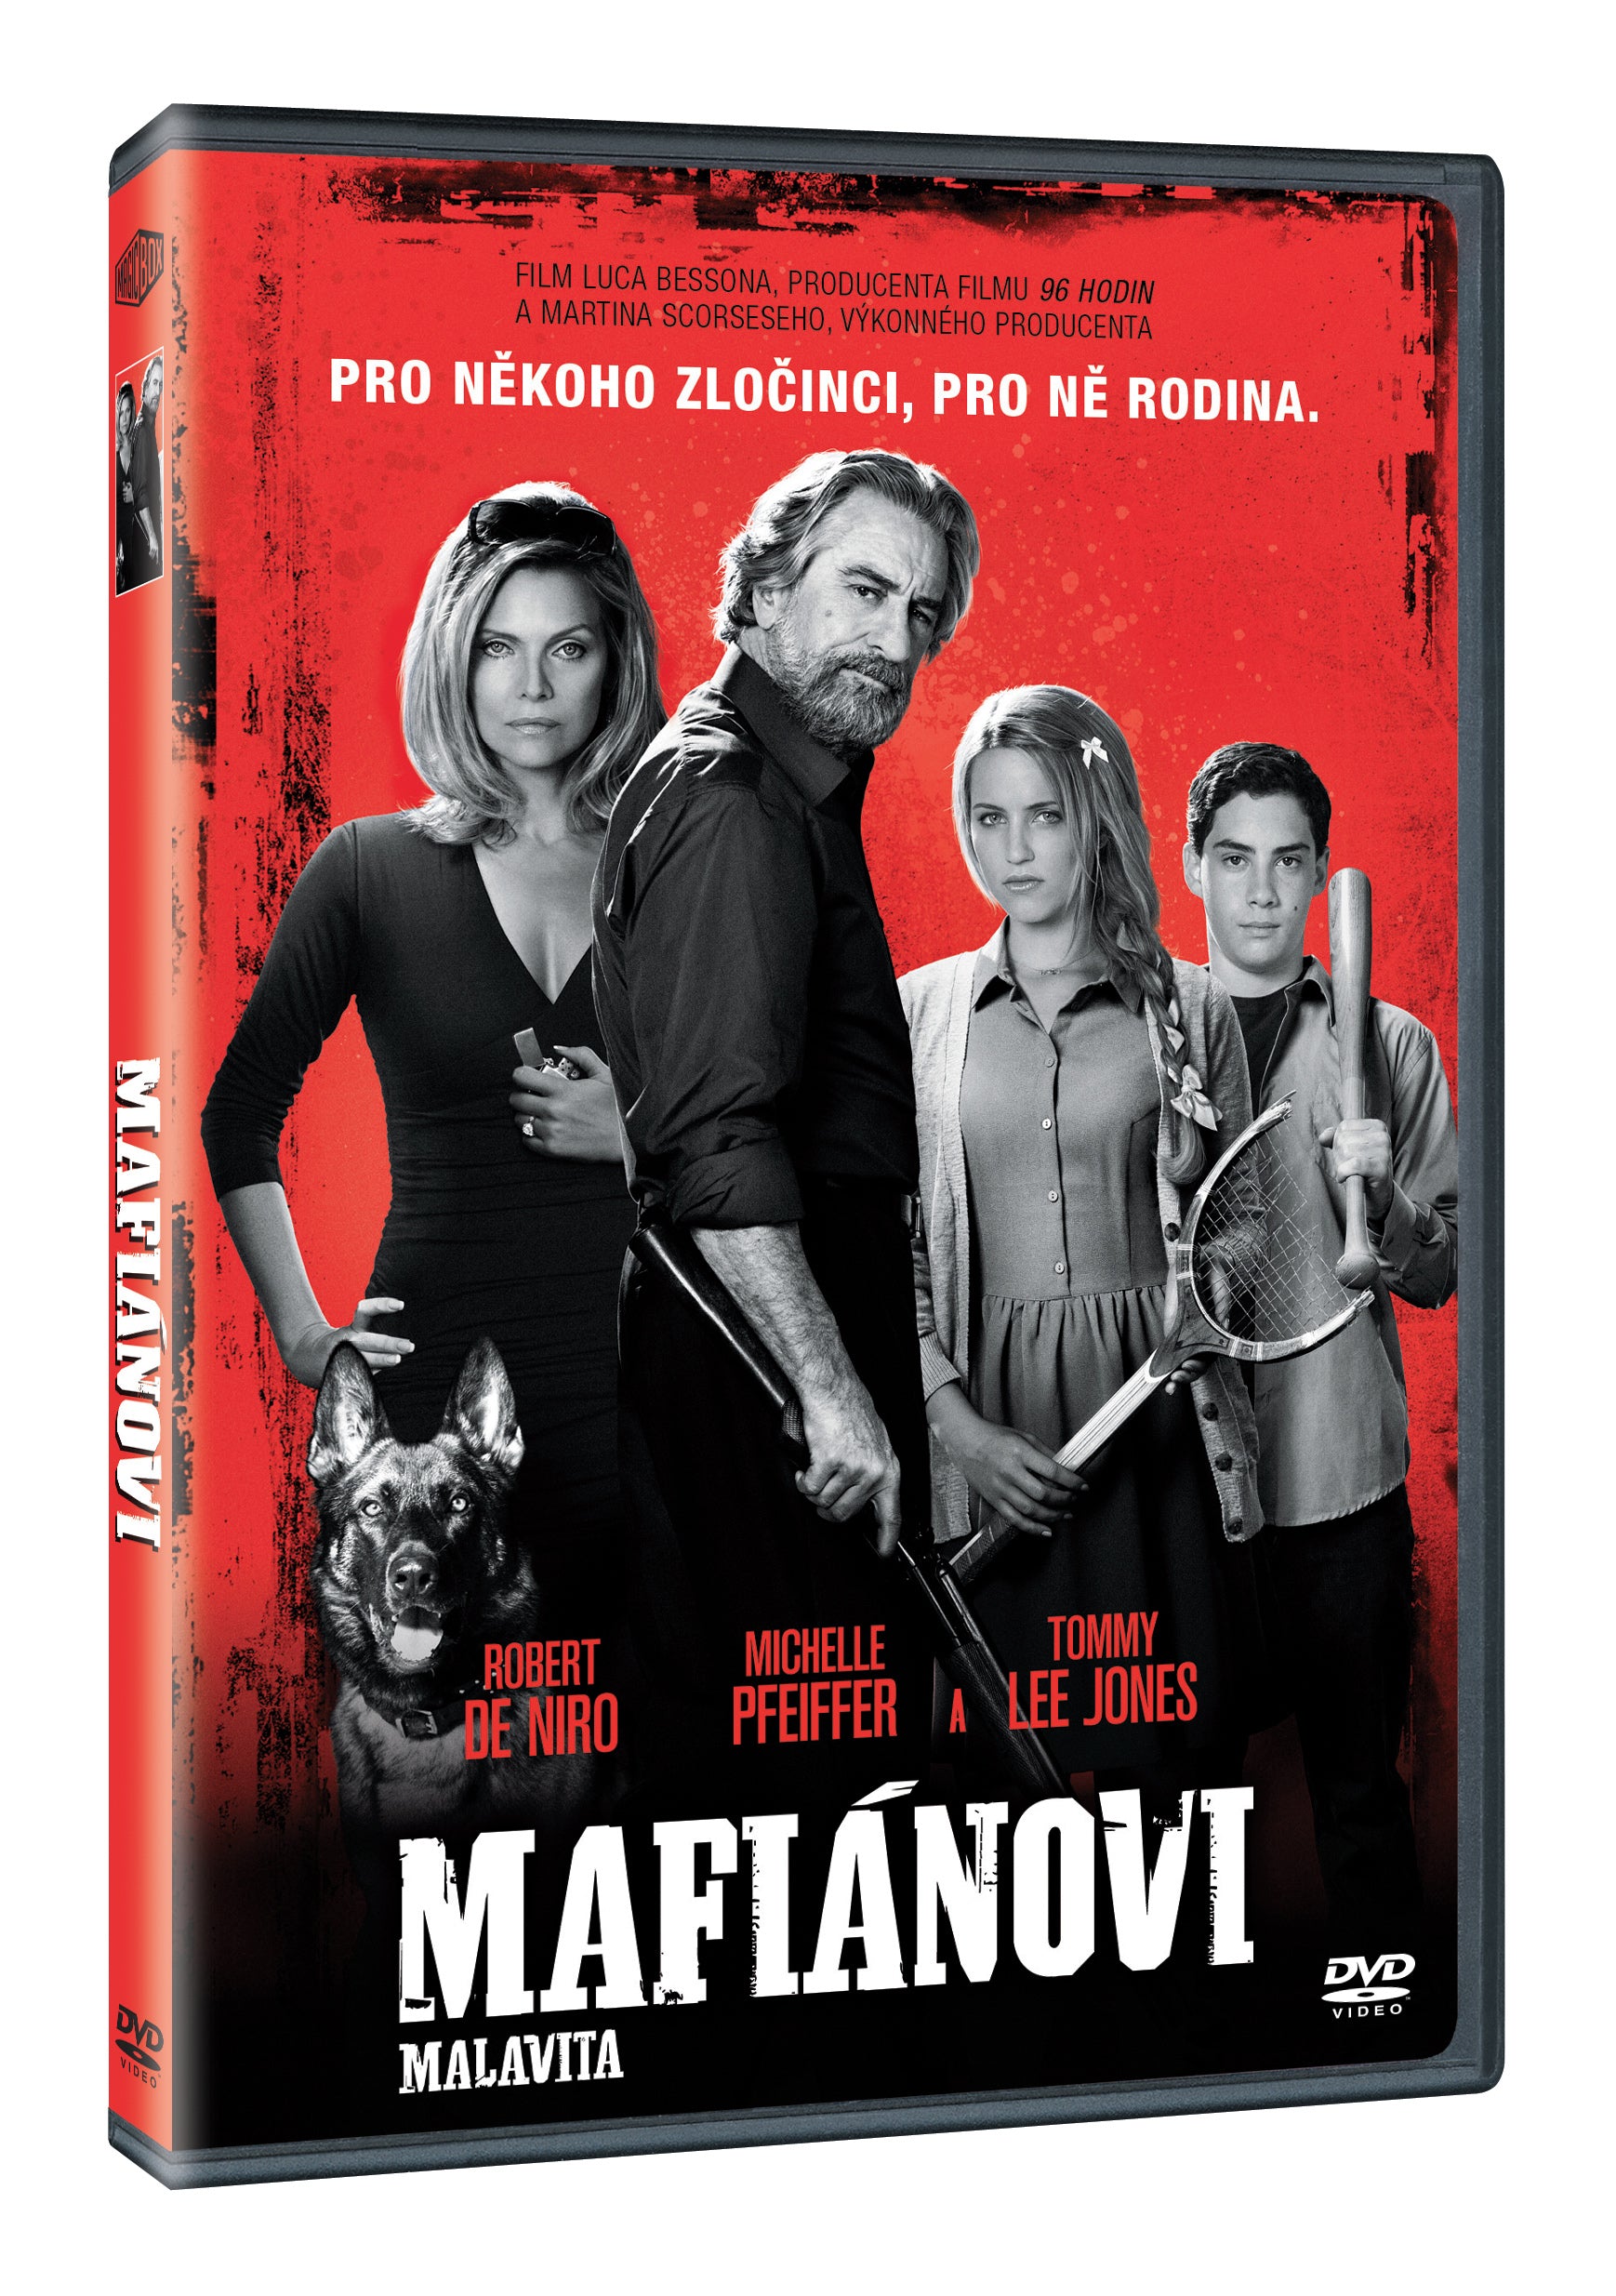 Mafianovi DVD / The Family